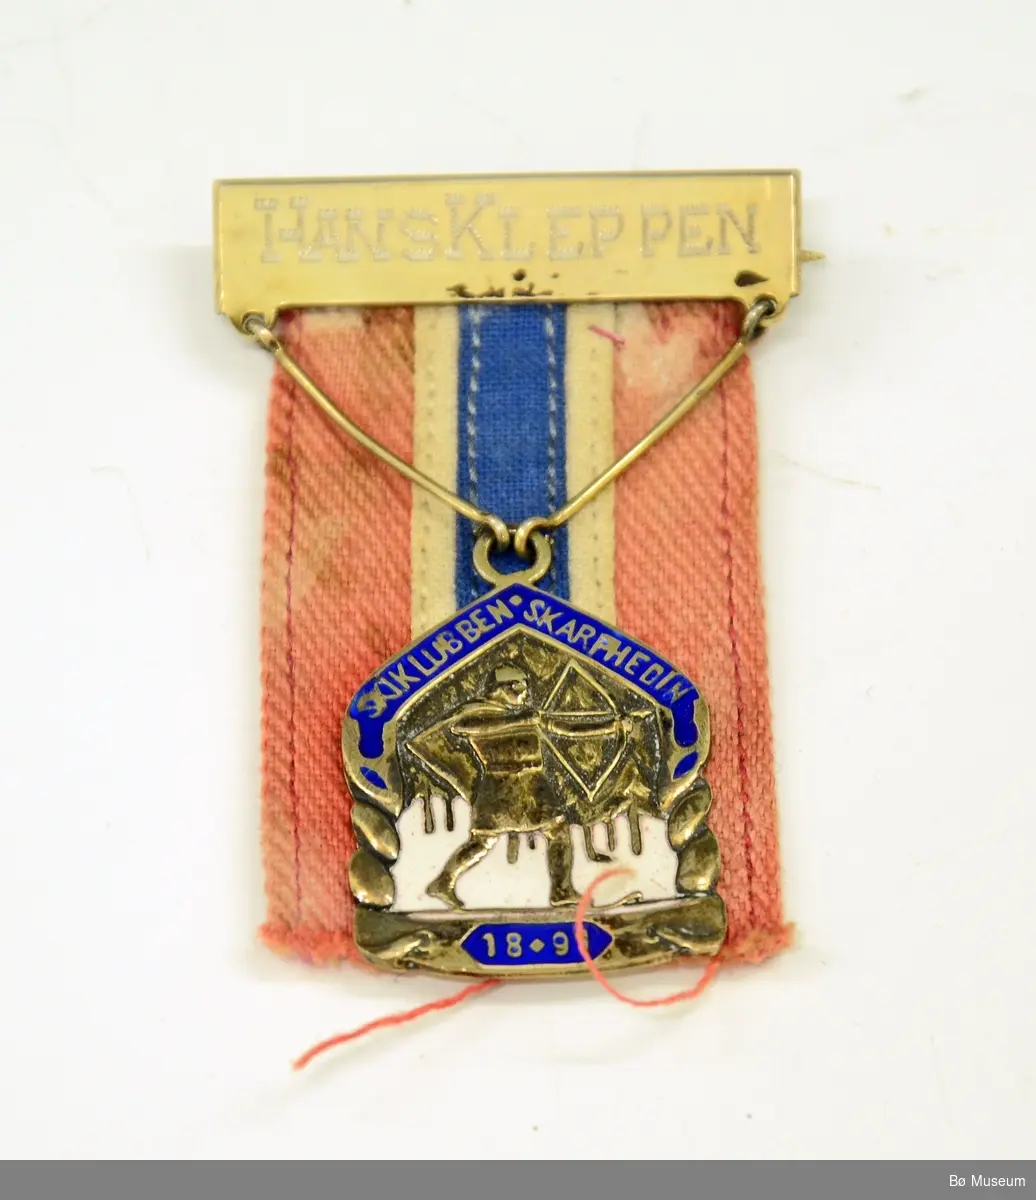 Medalje med innskrift:
HANS KLEPPEN
og SKIKLUBBEN SKARPHEDINS (1891) merke/logo
Bånd i rødt, hvitt og blått, svært falmet og gulnet.